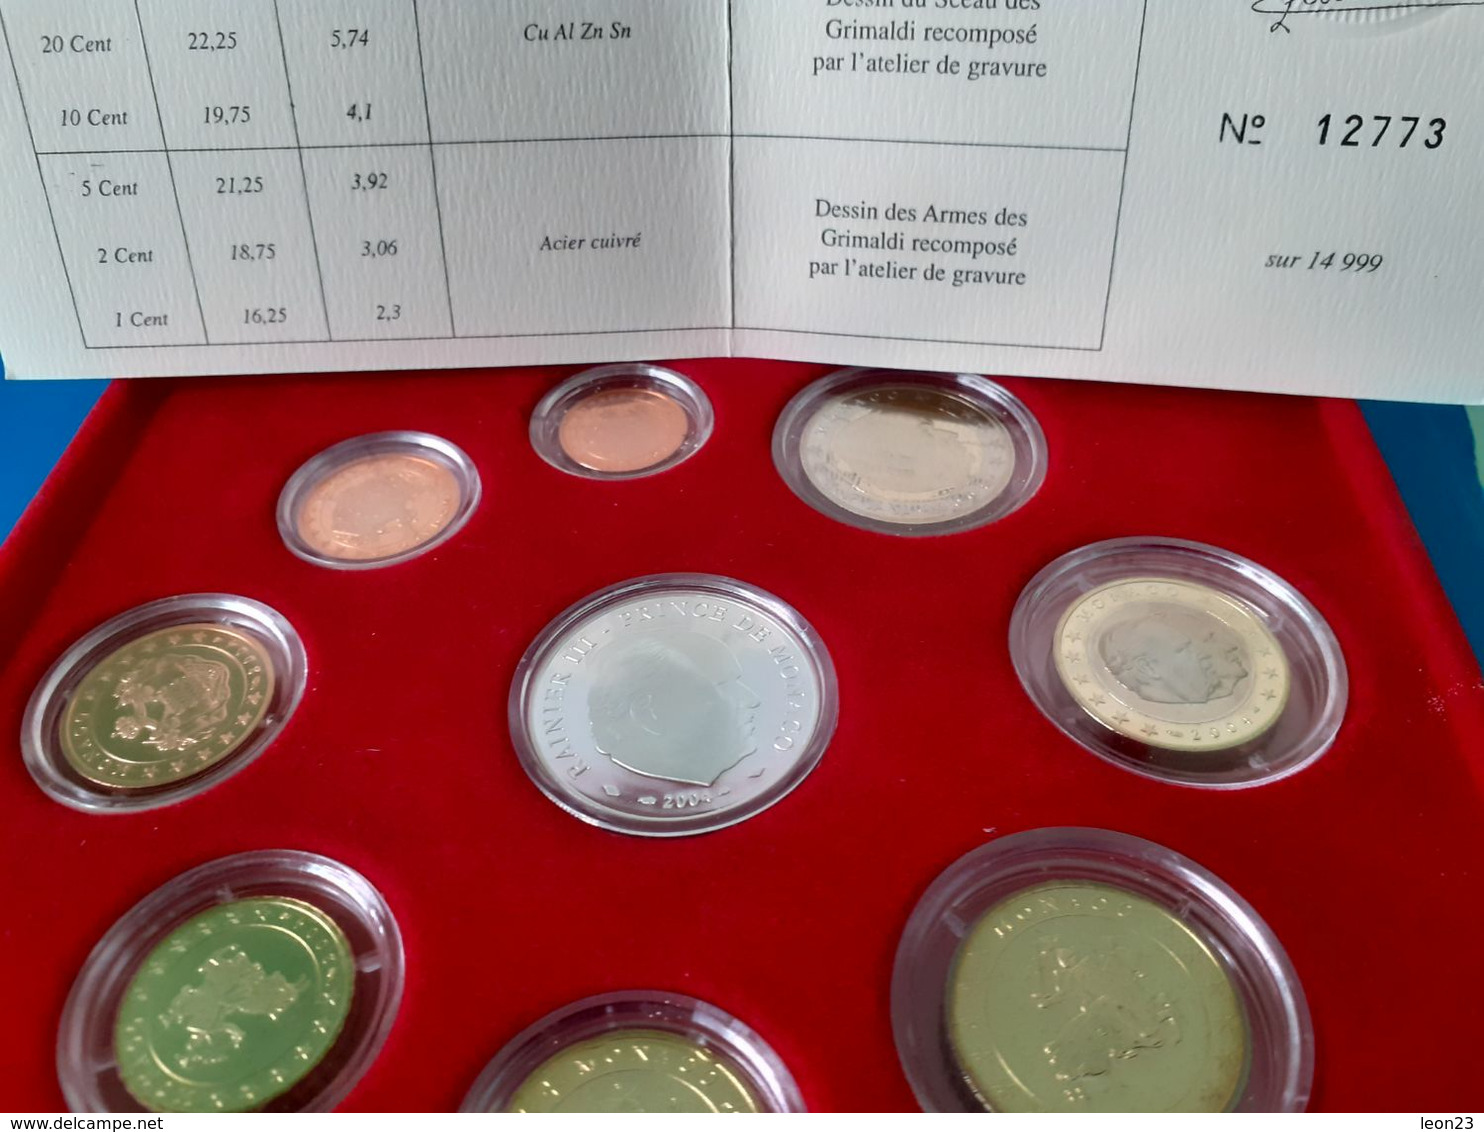 EURO SET MONACO 1C TO 5E (9 COINS) 2004 PROOF IN ORIGINAL BOX WITH CERTIFICATE - Monaco